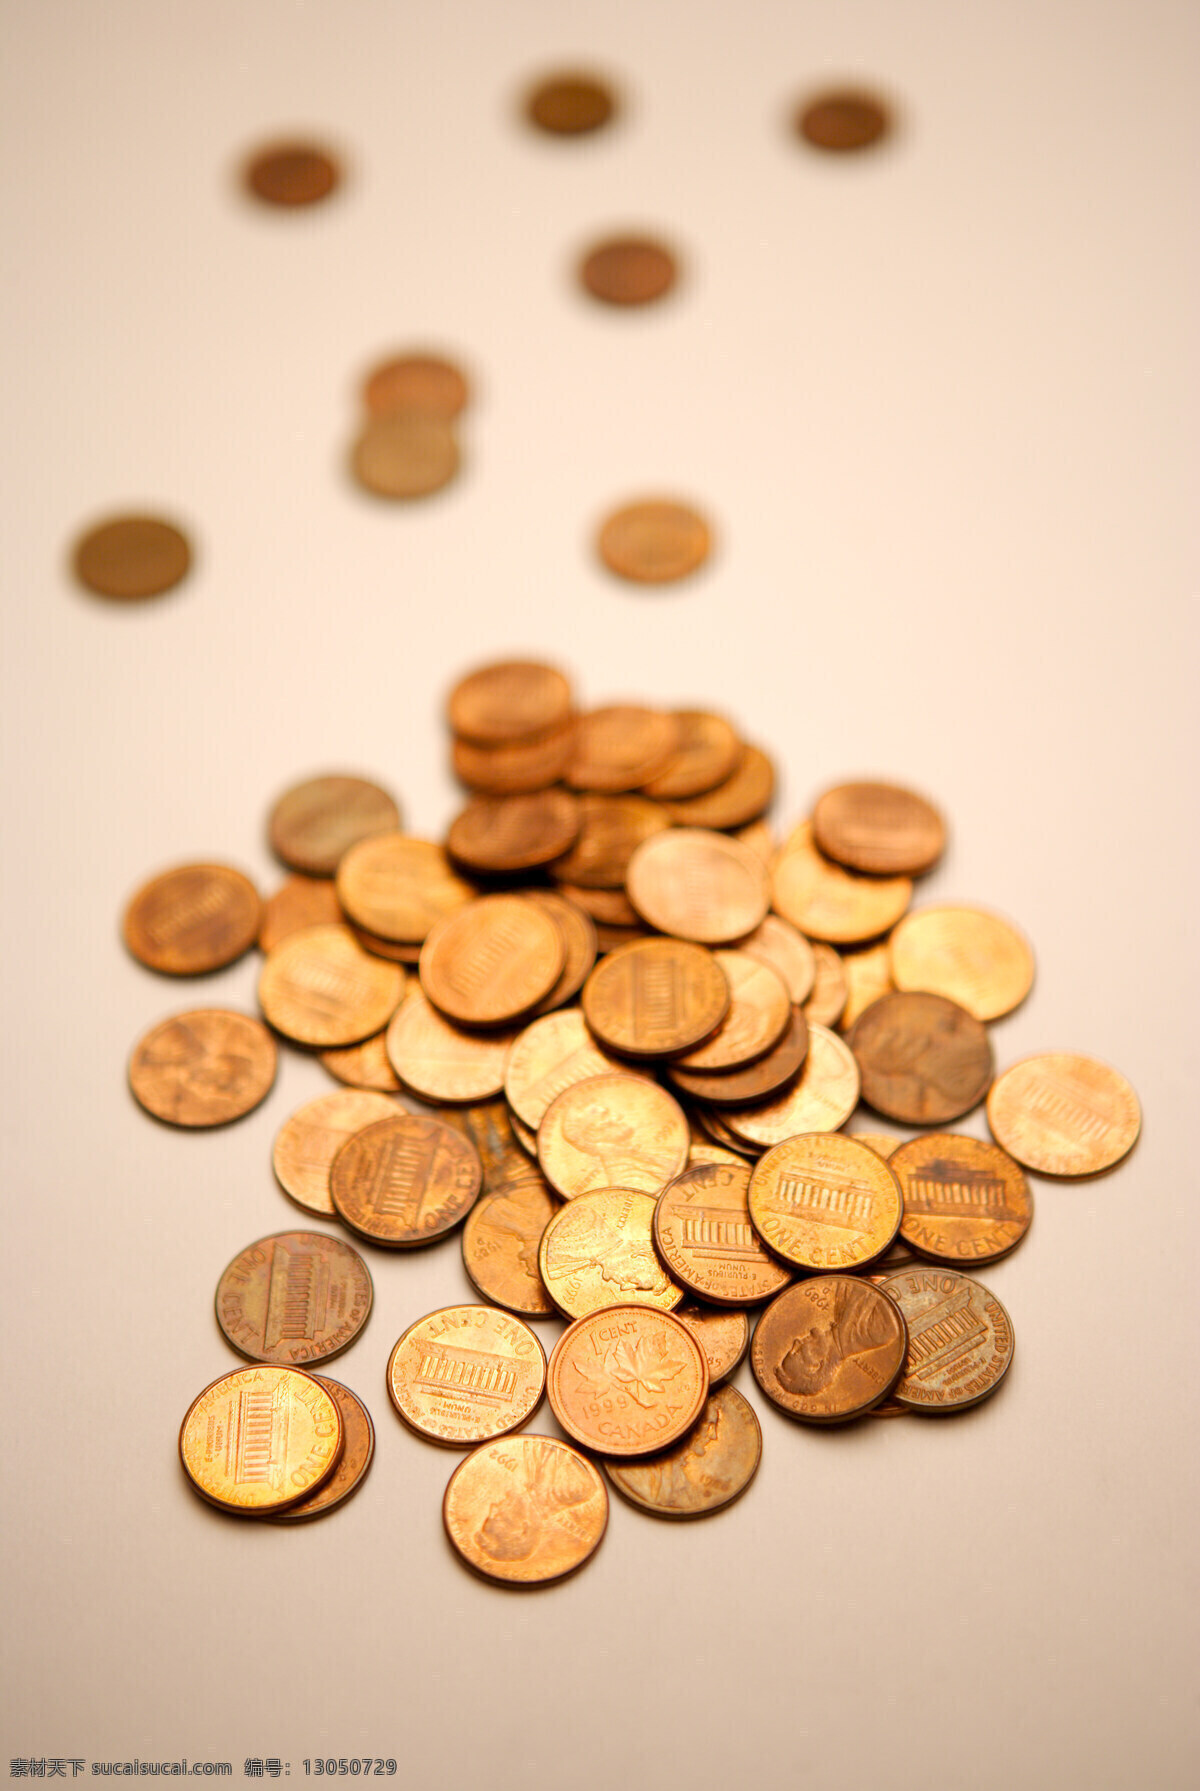 钱币 硬币 金融 金融素材 钱币素材 金色钱币 成堆的钱币 商务金融